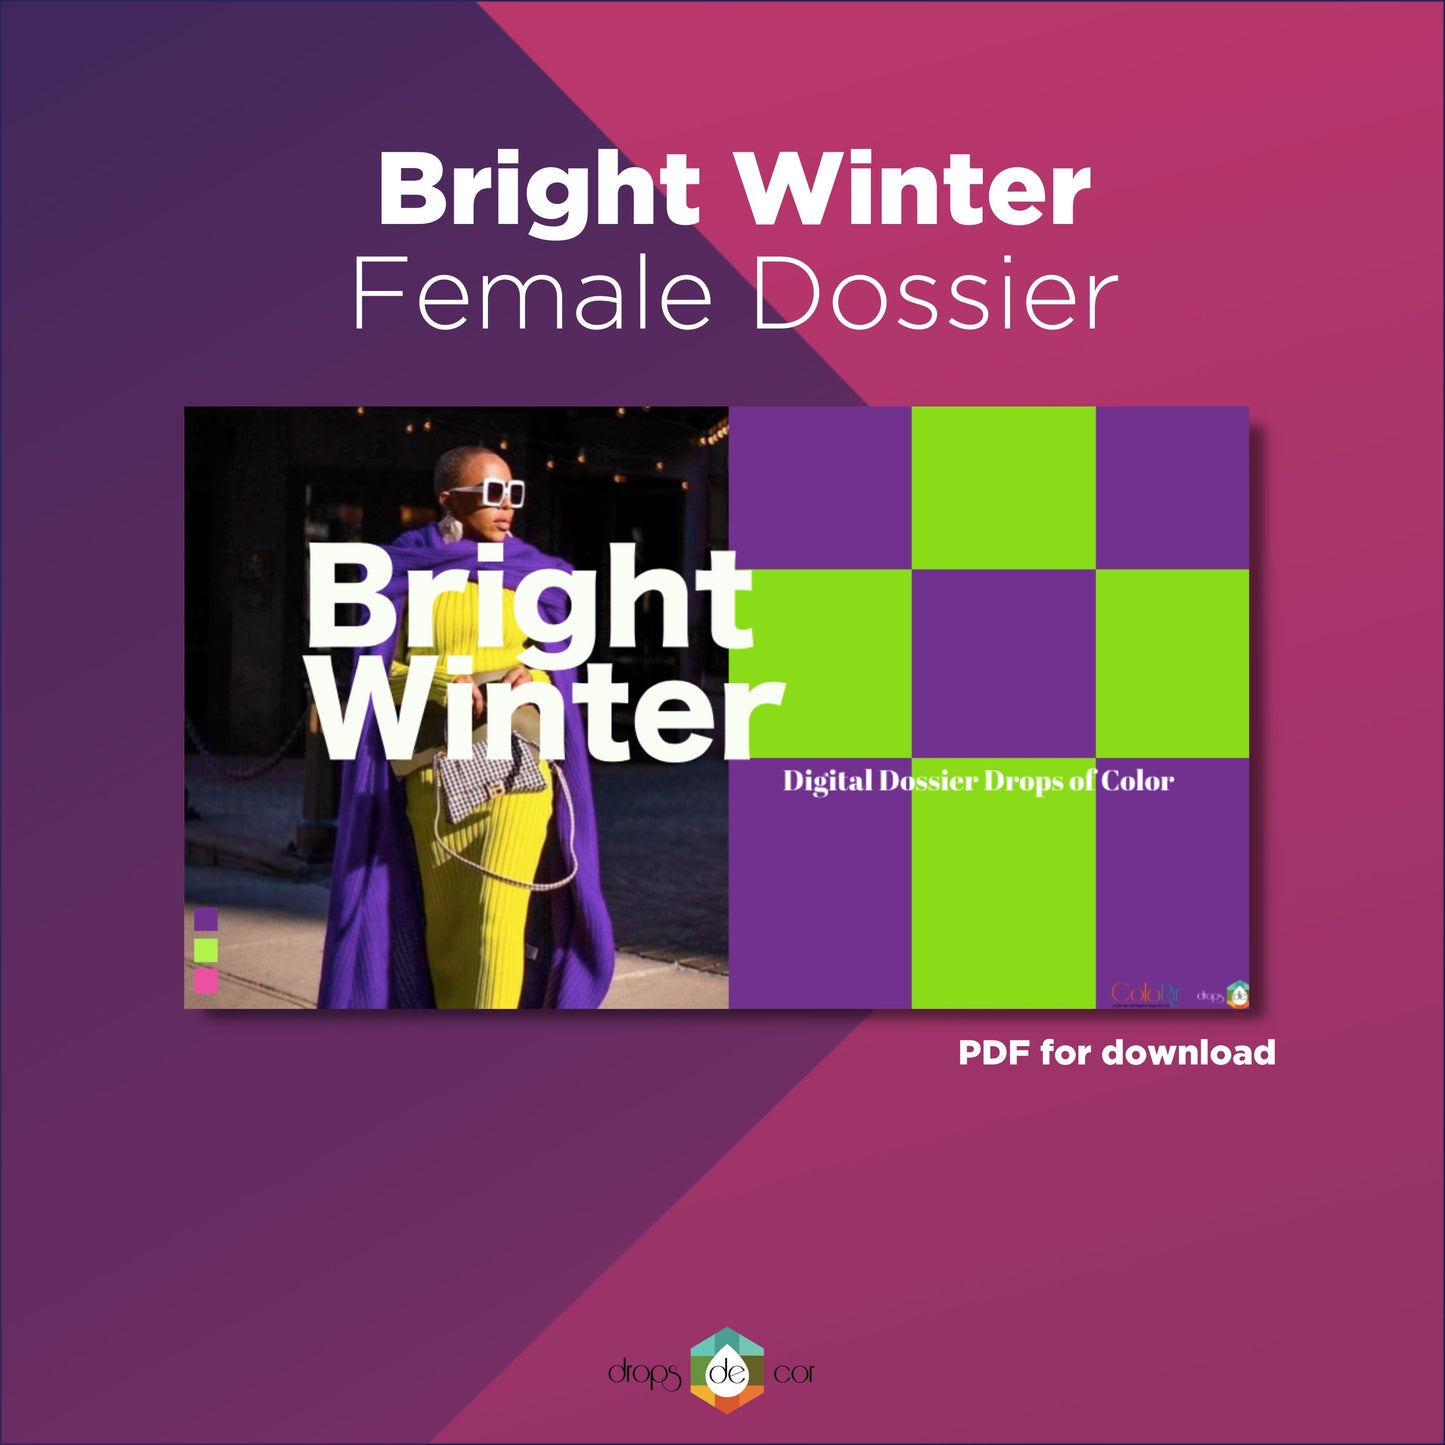 Bright Winter Digital Dossier